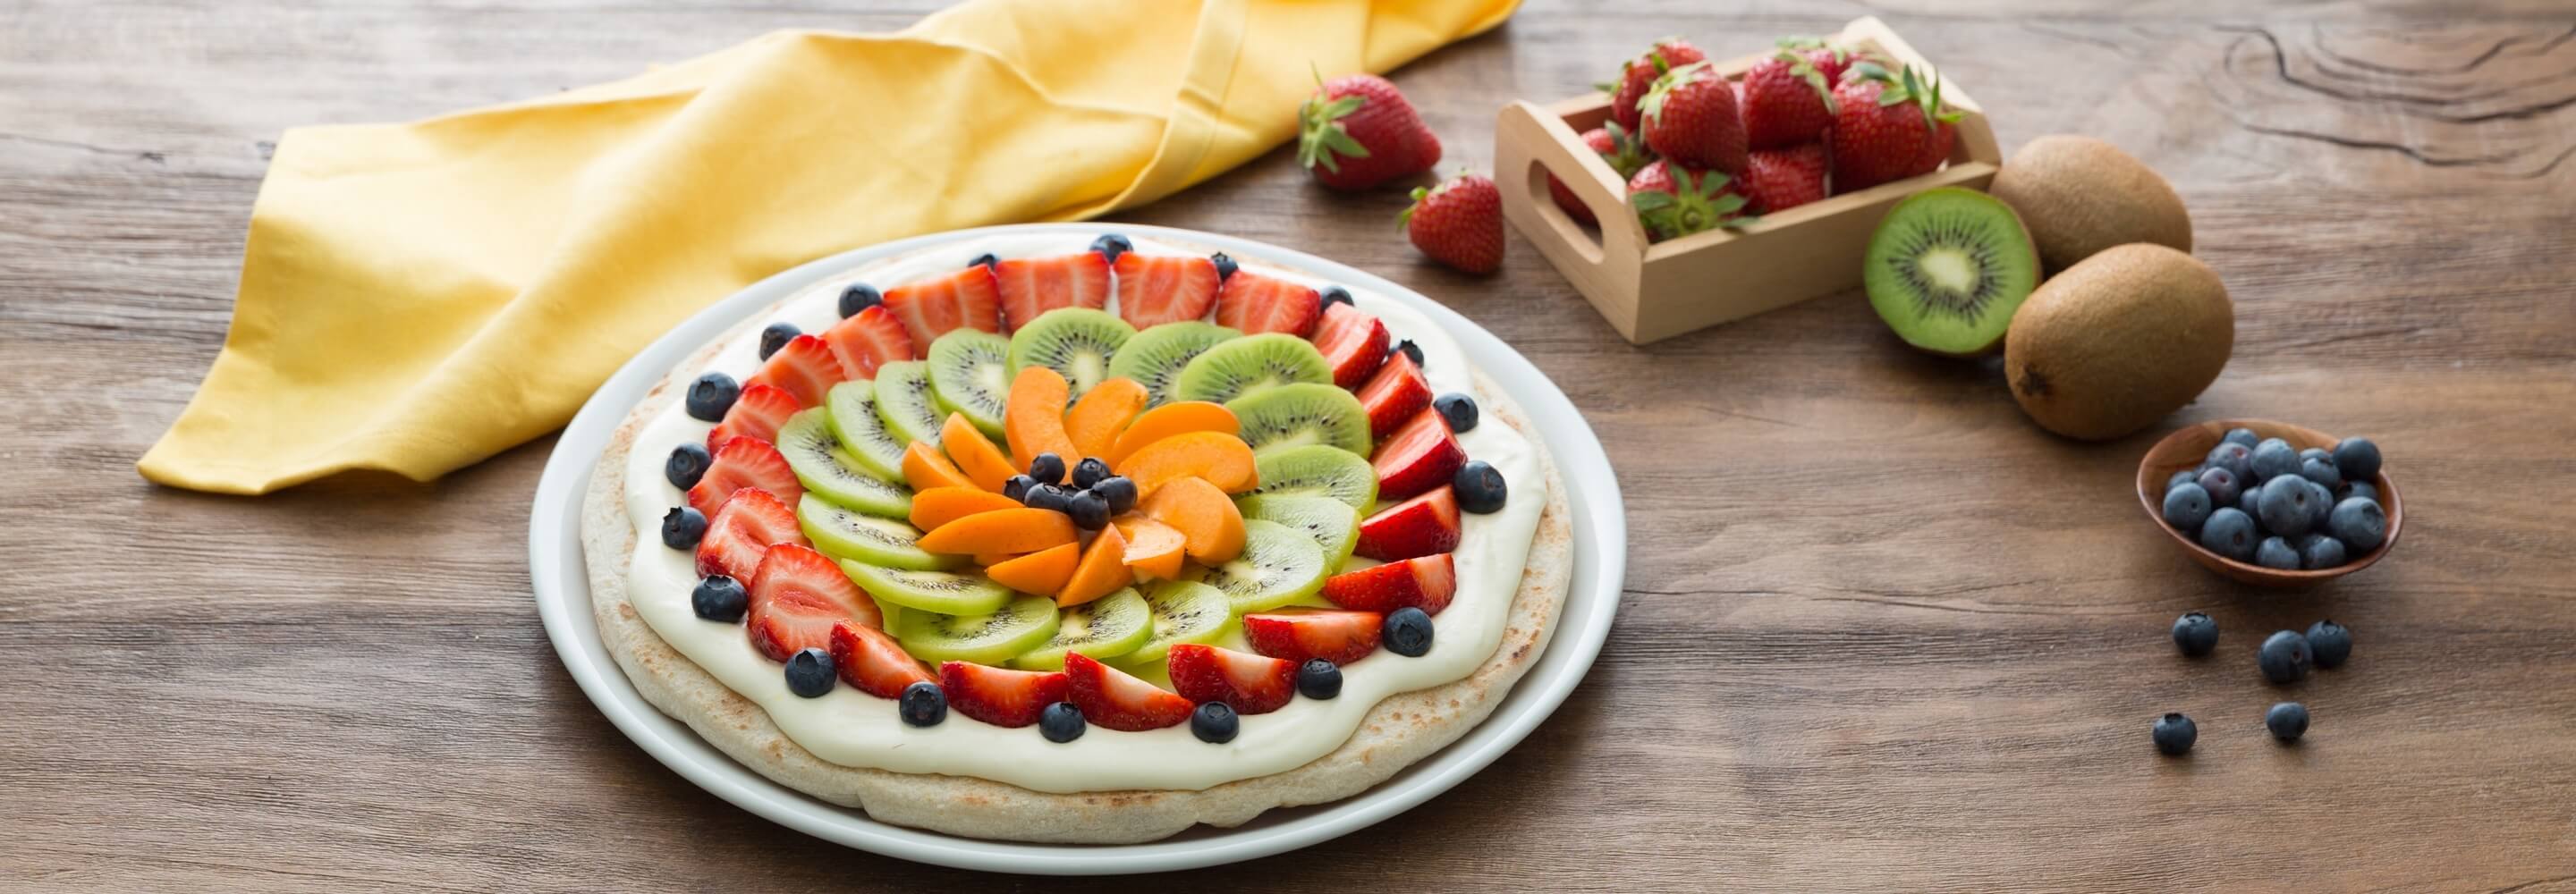 Fruit pizza kiwi et fraises